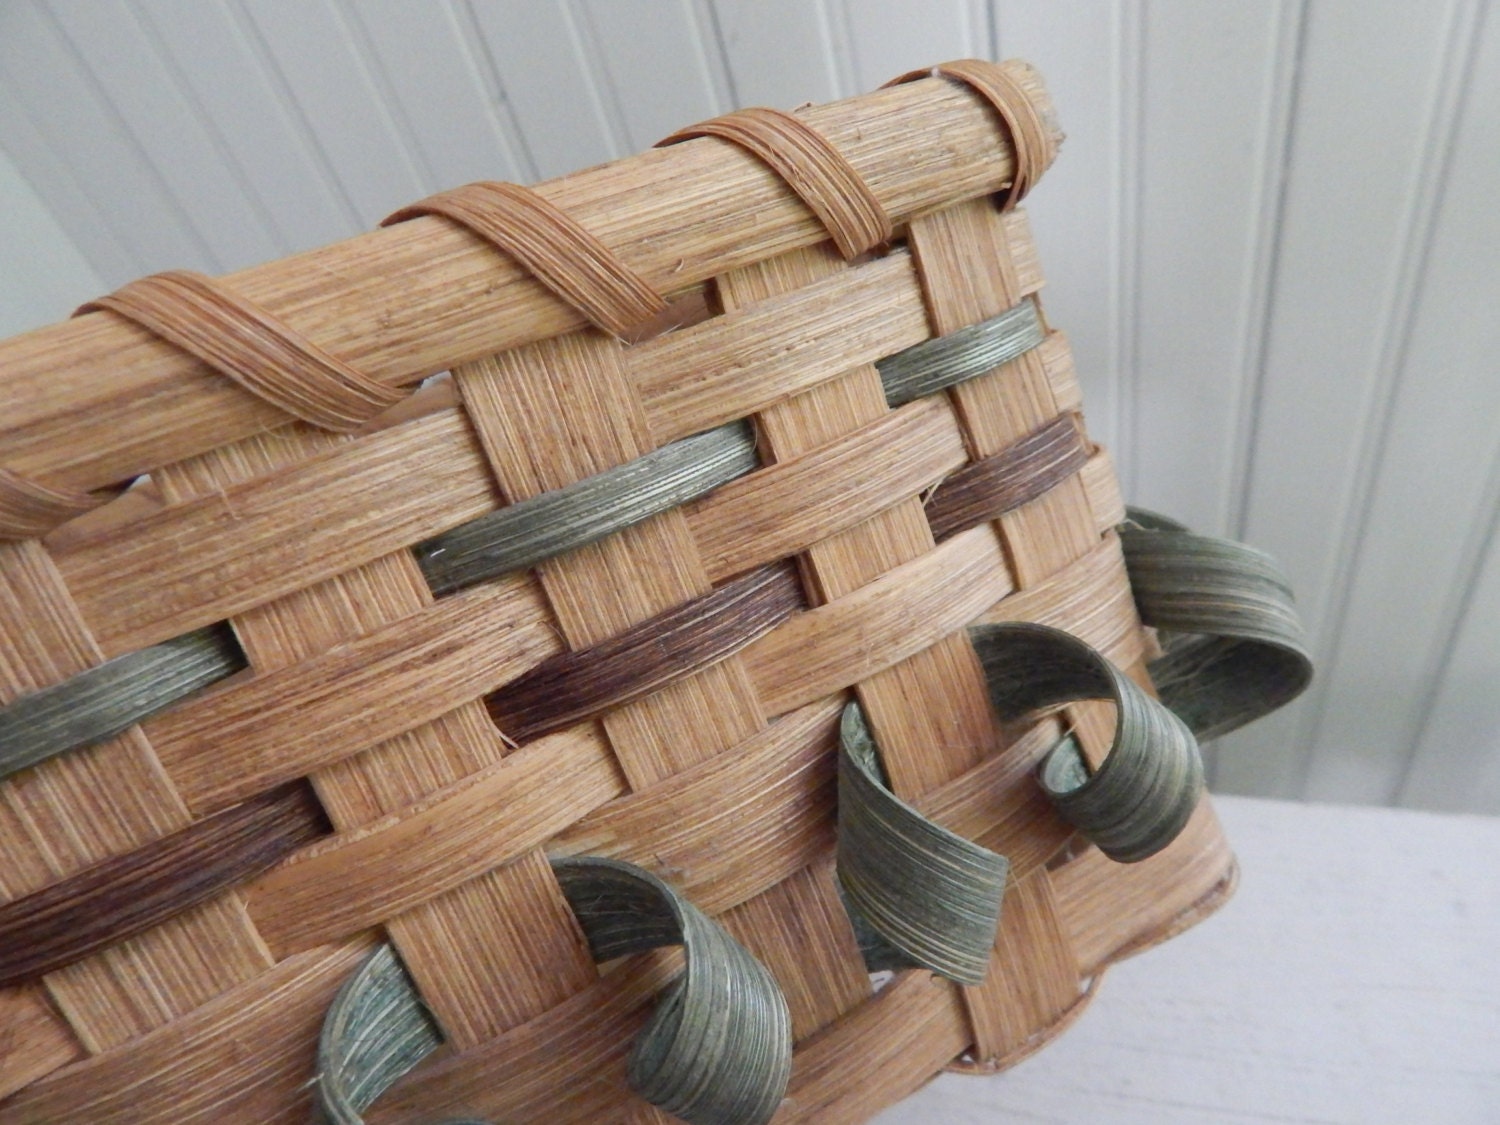 CHILDWEET Cesta de mimbre rectangular de madera del niño rural de la cesta  de escritorio de la bandeja de la